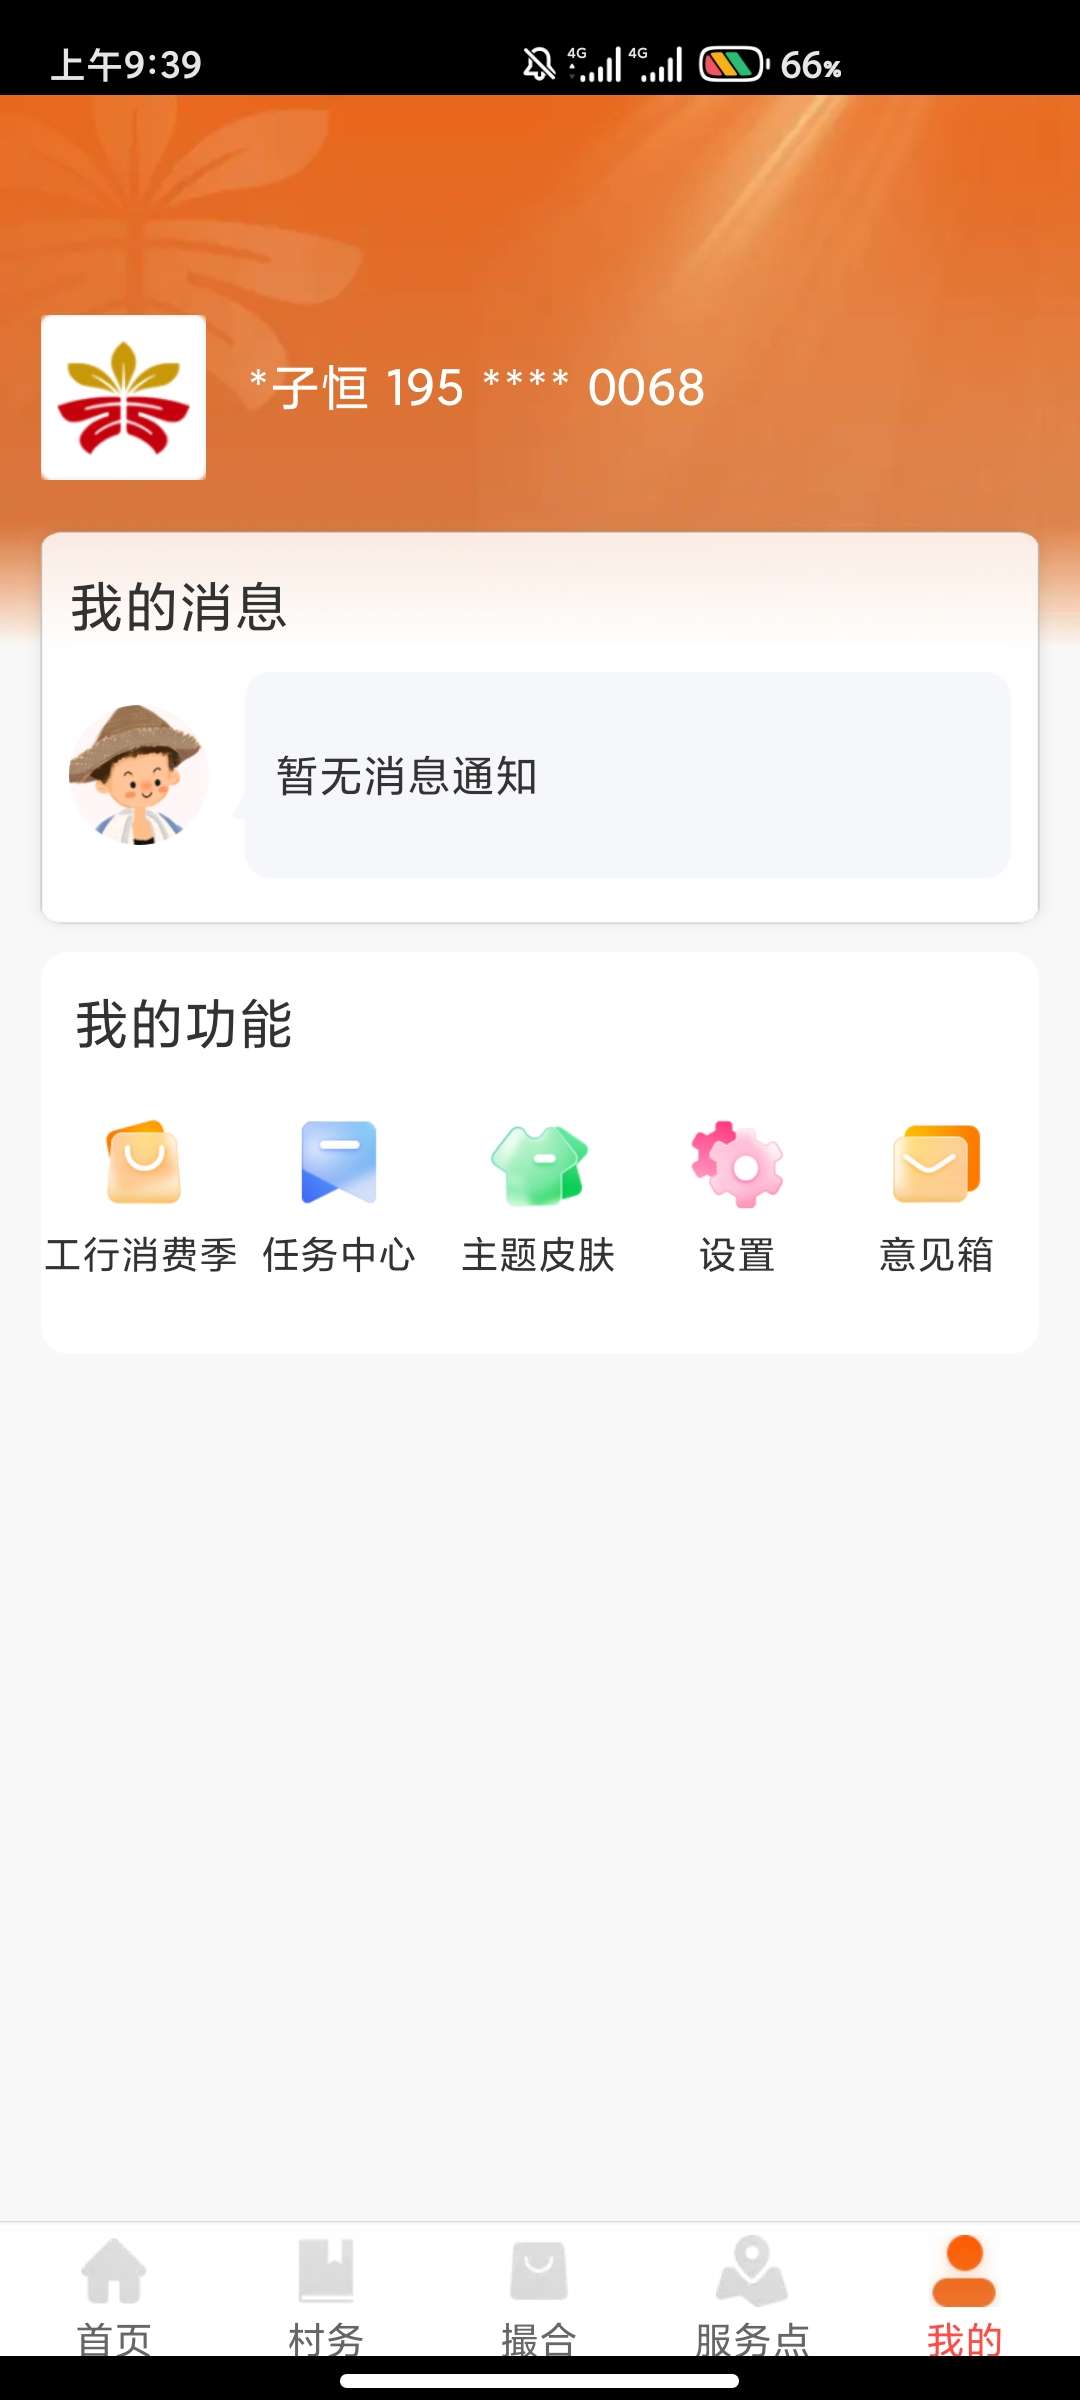 工银兴农通农户认证得微信15立减金_福利红包